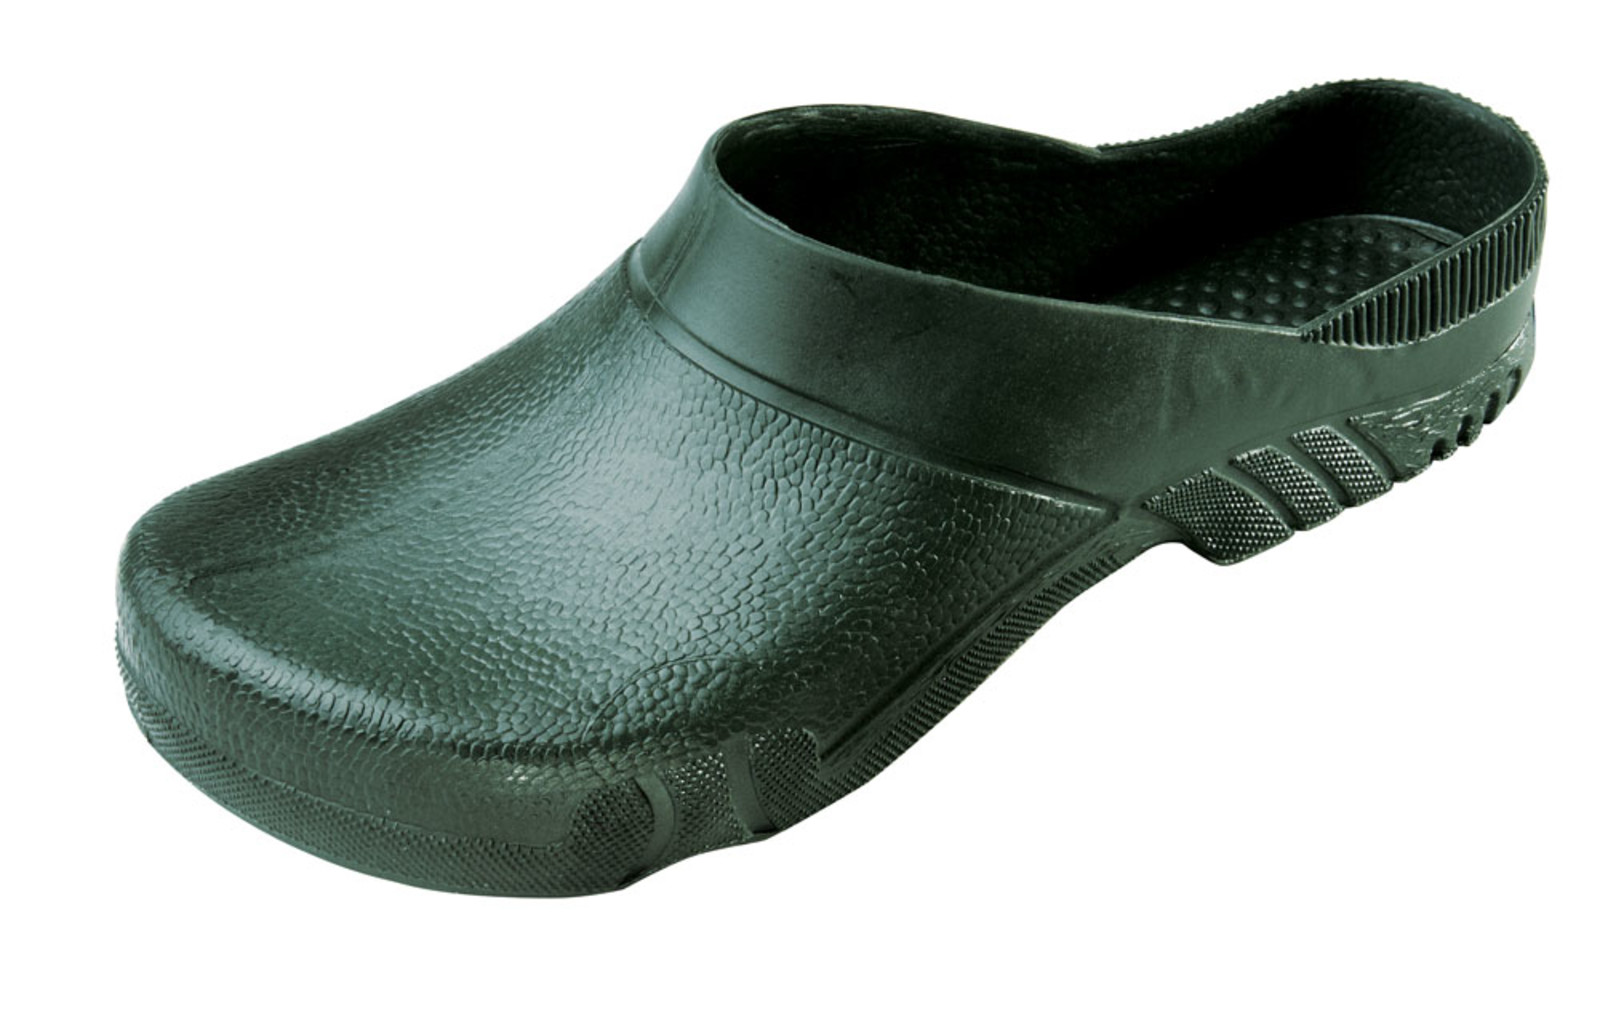 Galoše Boots Birba  - veľkosť: 39-40, farba: olivová zelená